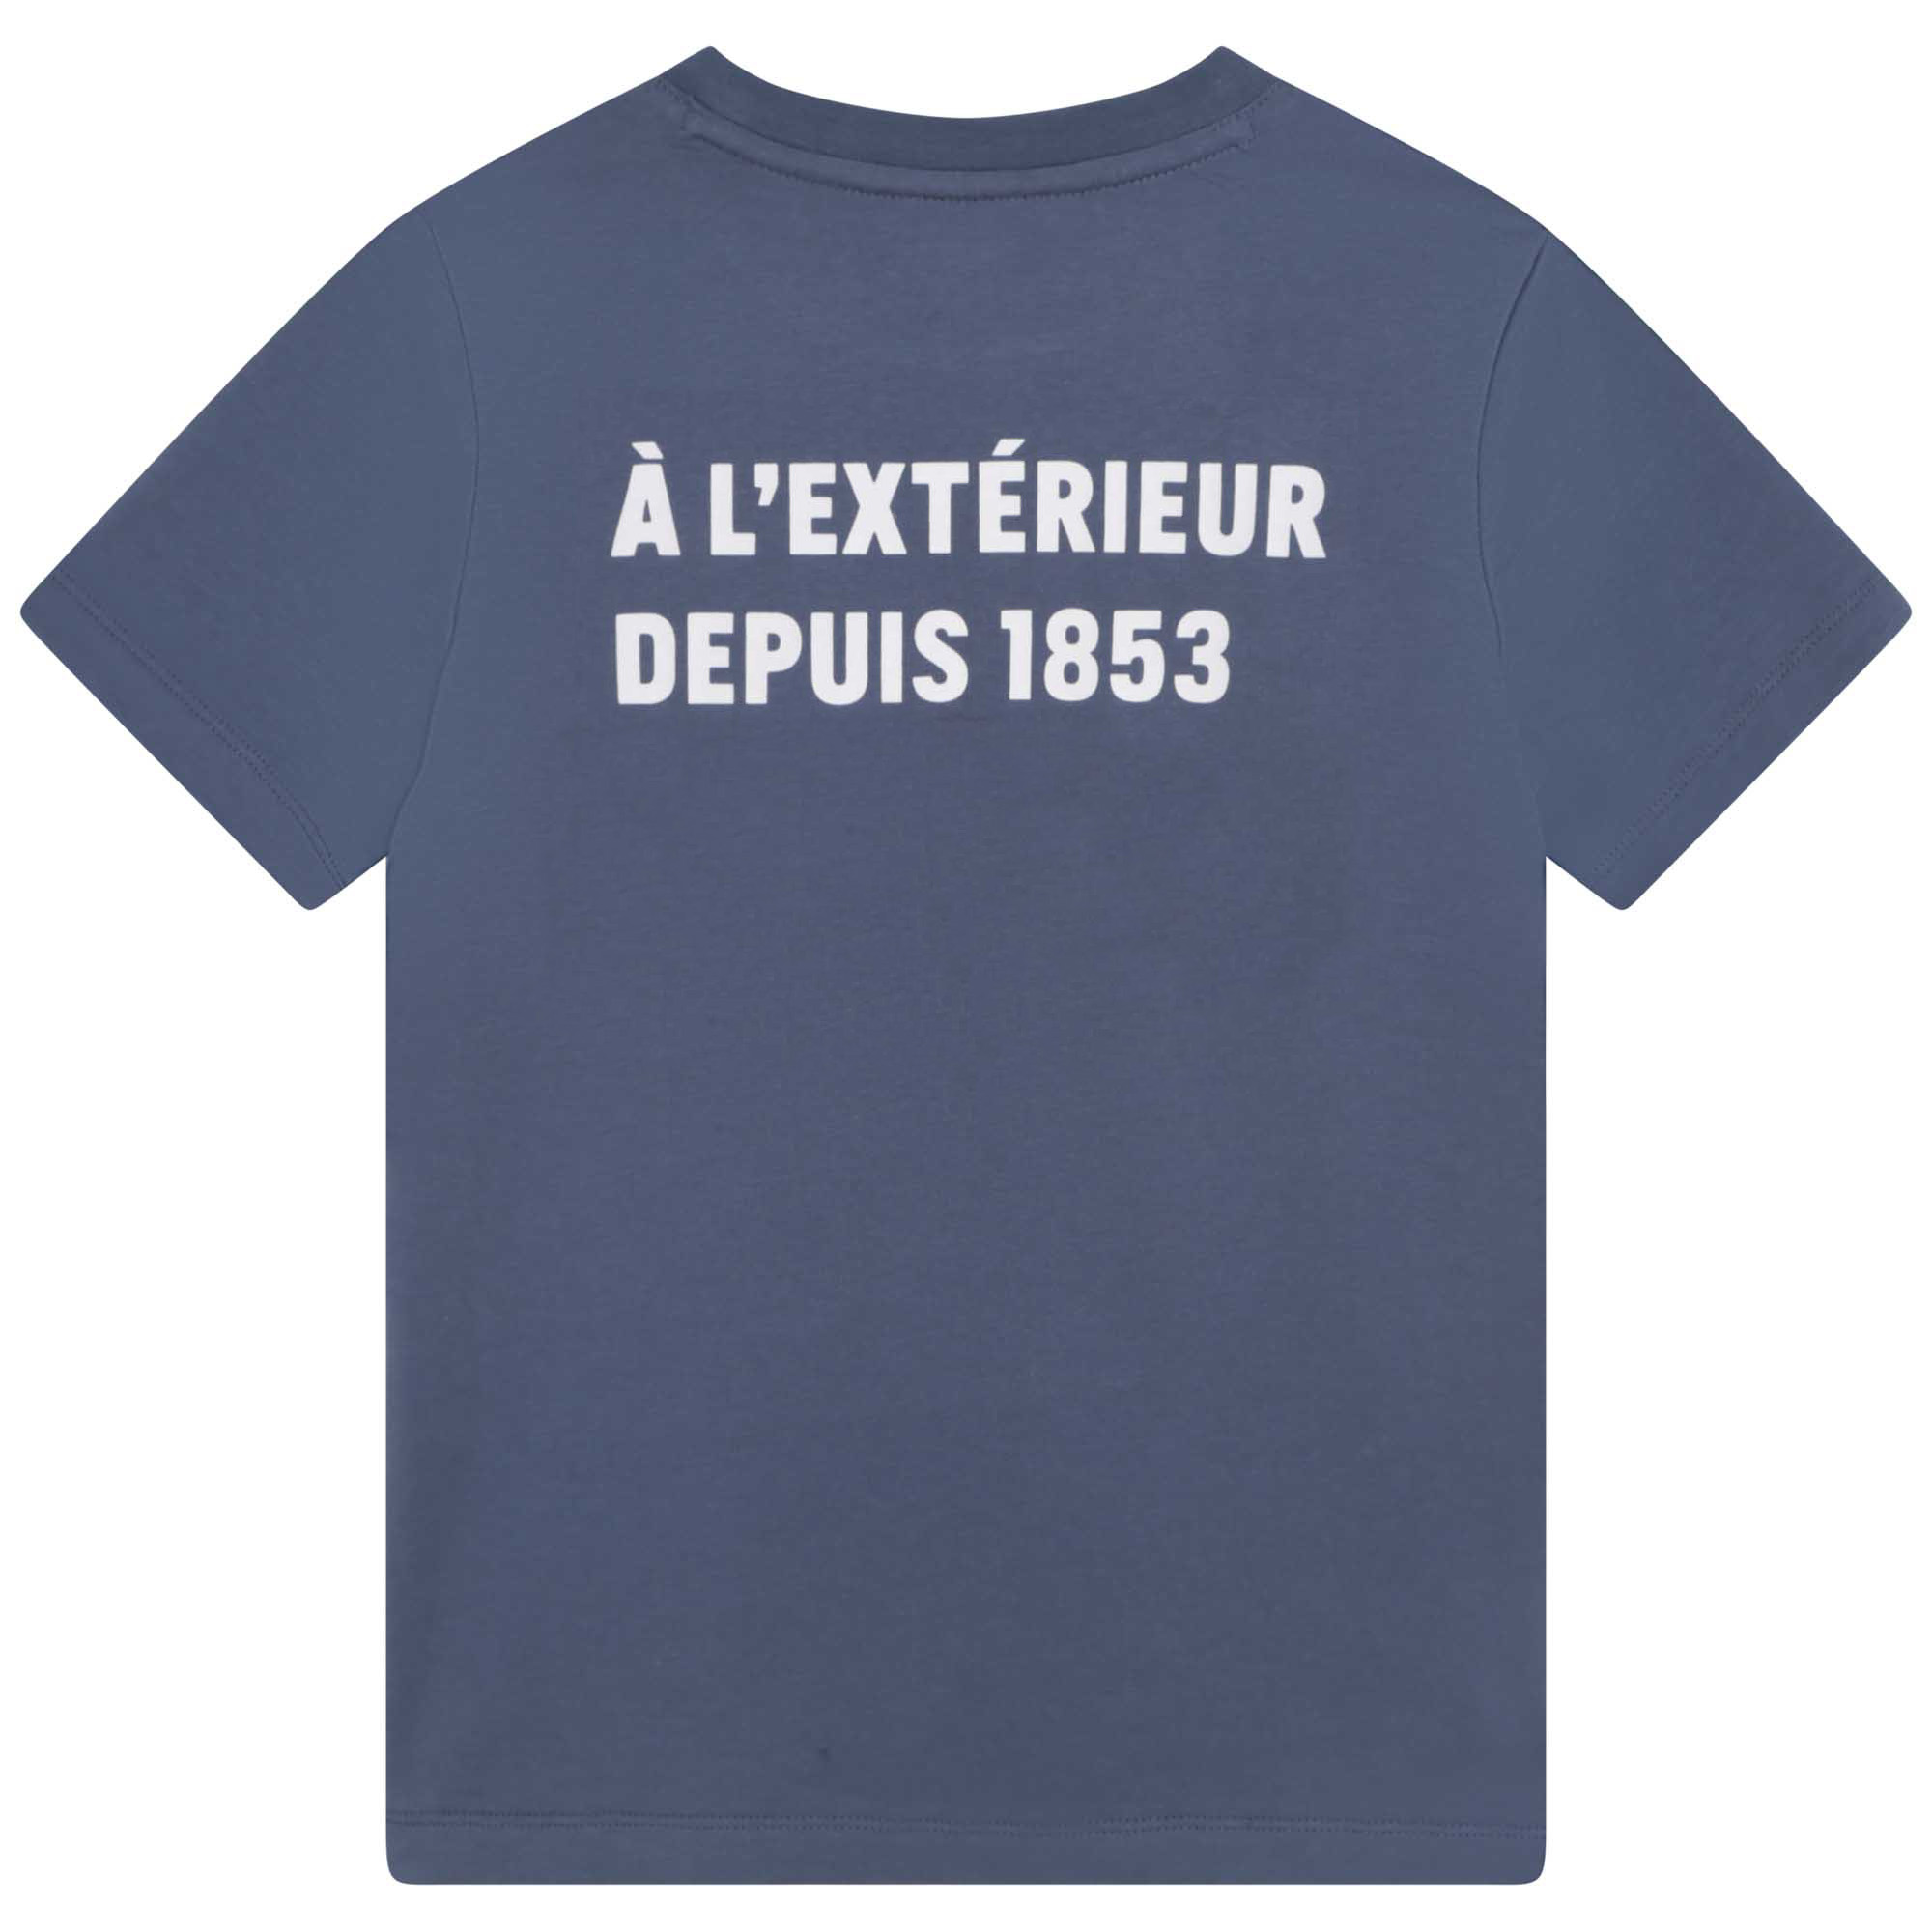 T-Shirt mit Print AIGLE Für UNISEX